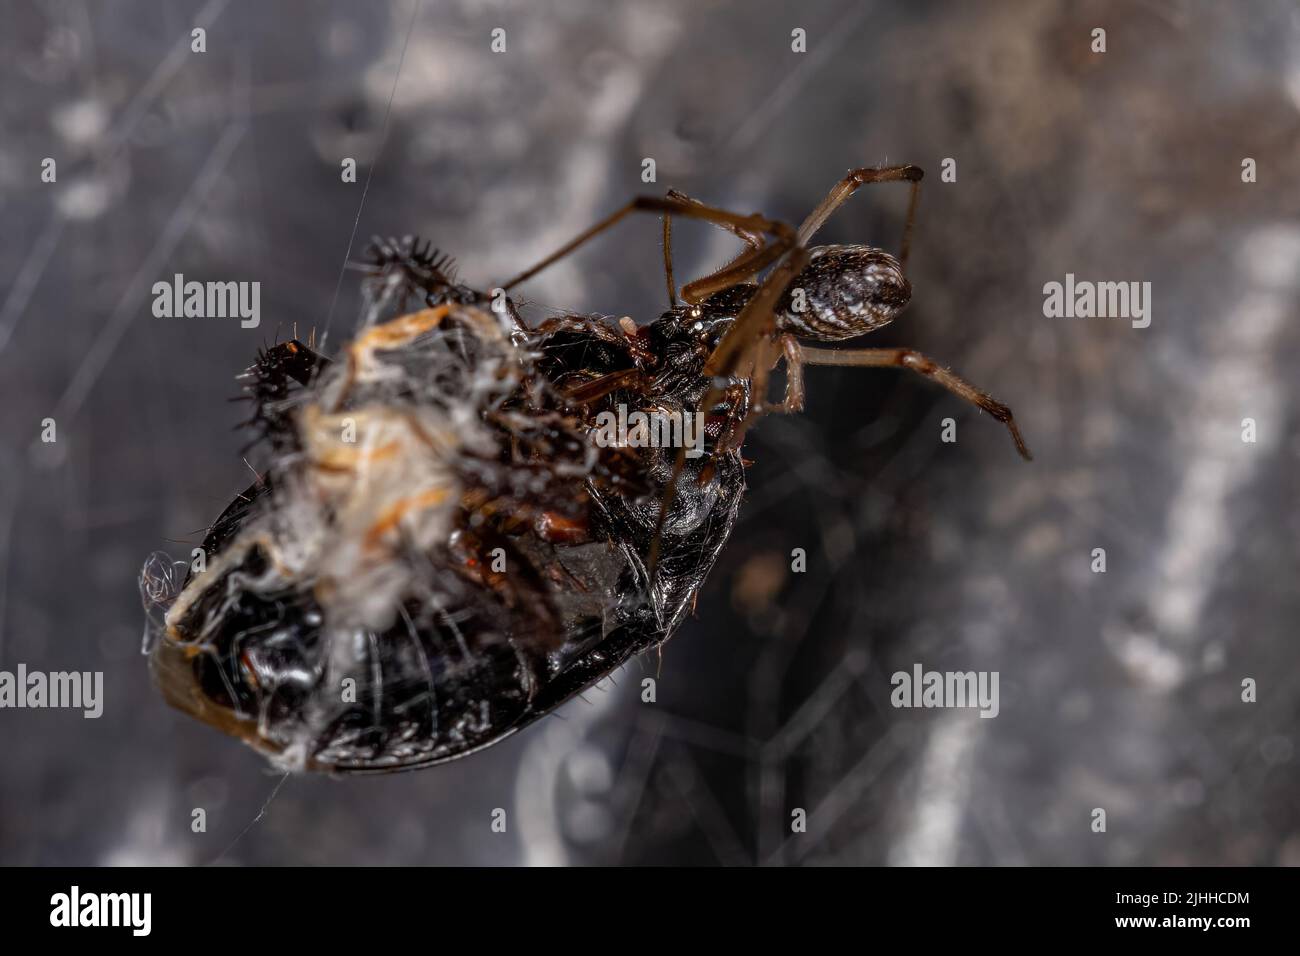 Viuda Marrón Varón de la especie Latrodectus geometricus criando sobre un insecto apestoso Foto de stock